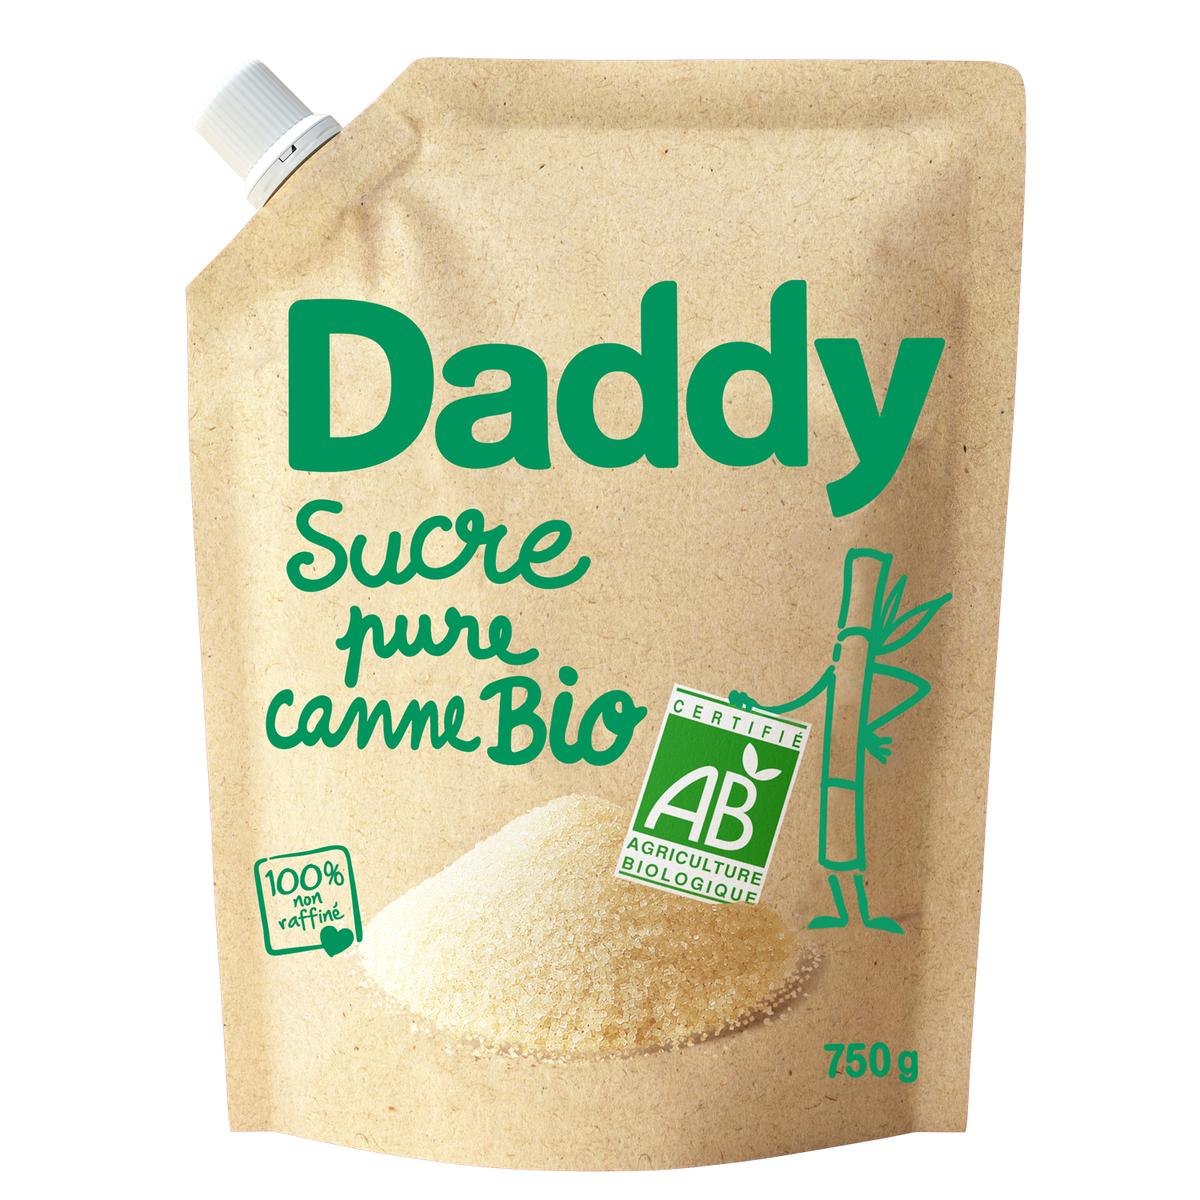 Sucre en poudre - Daddy - 1 kg